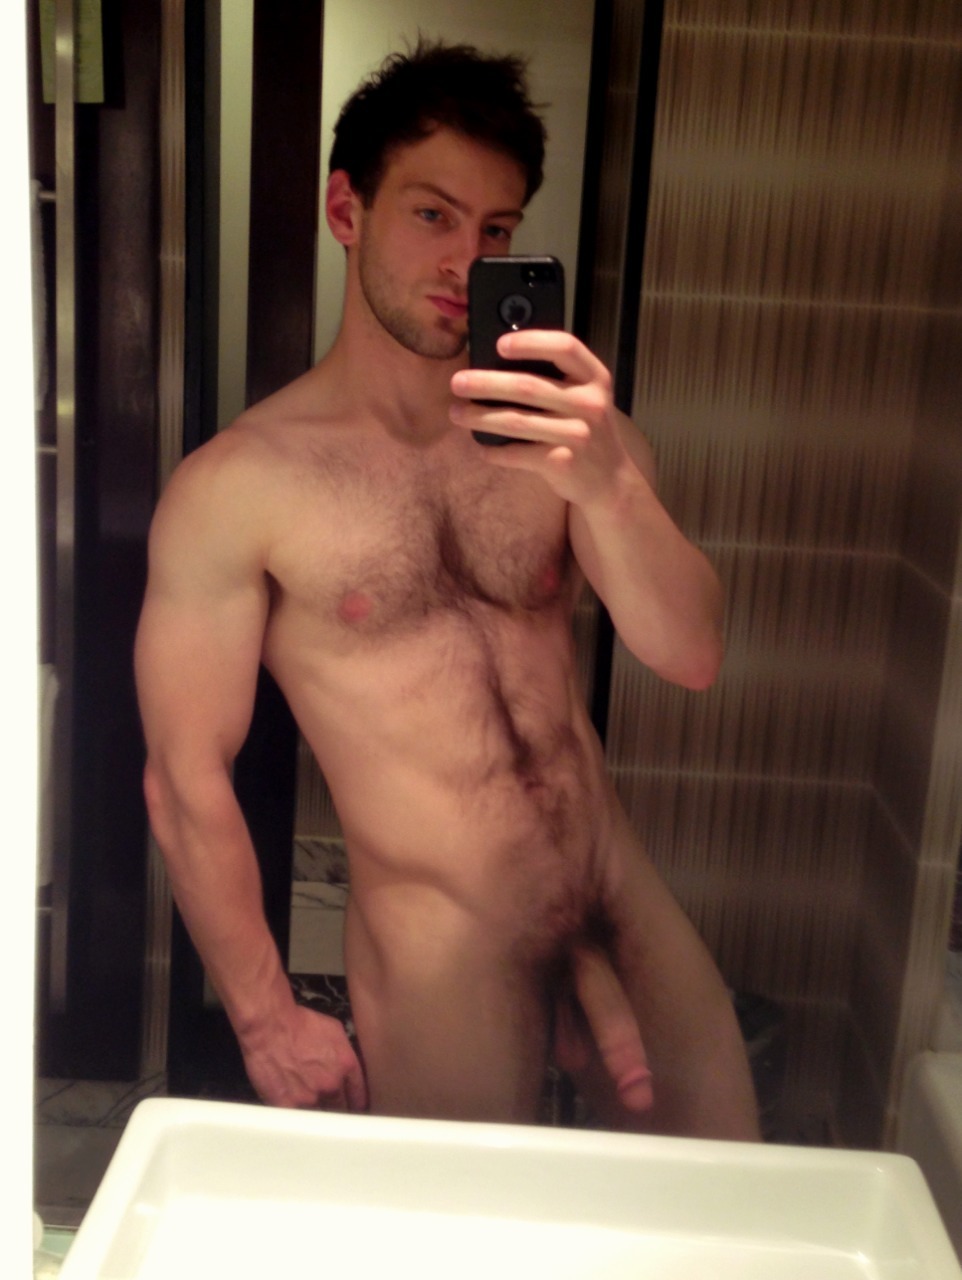 galleries hot naked guy mirror selfie